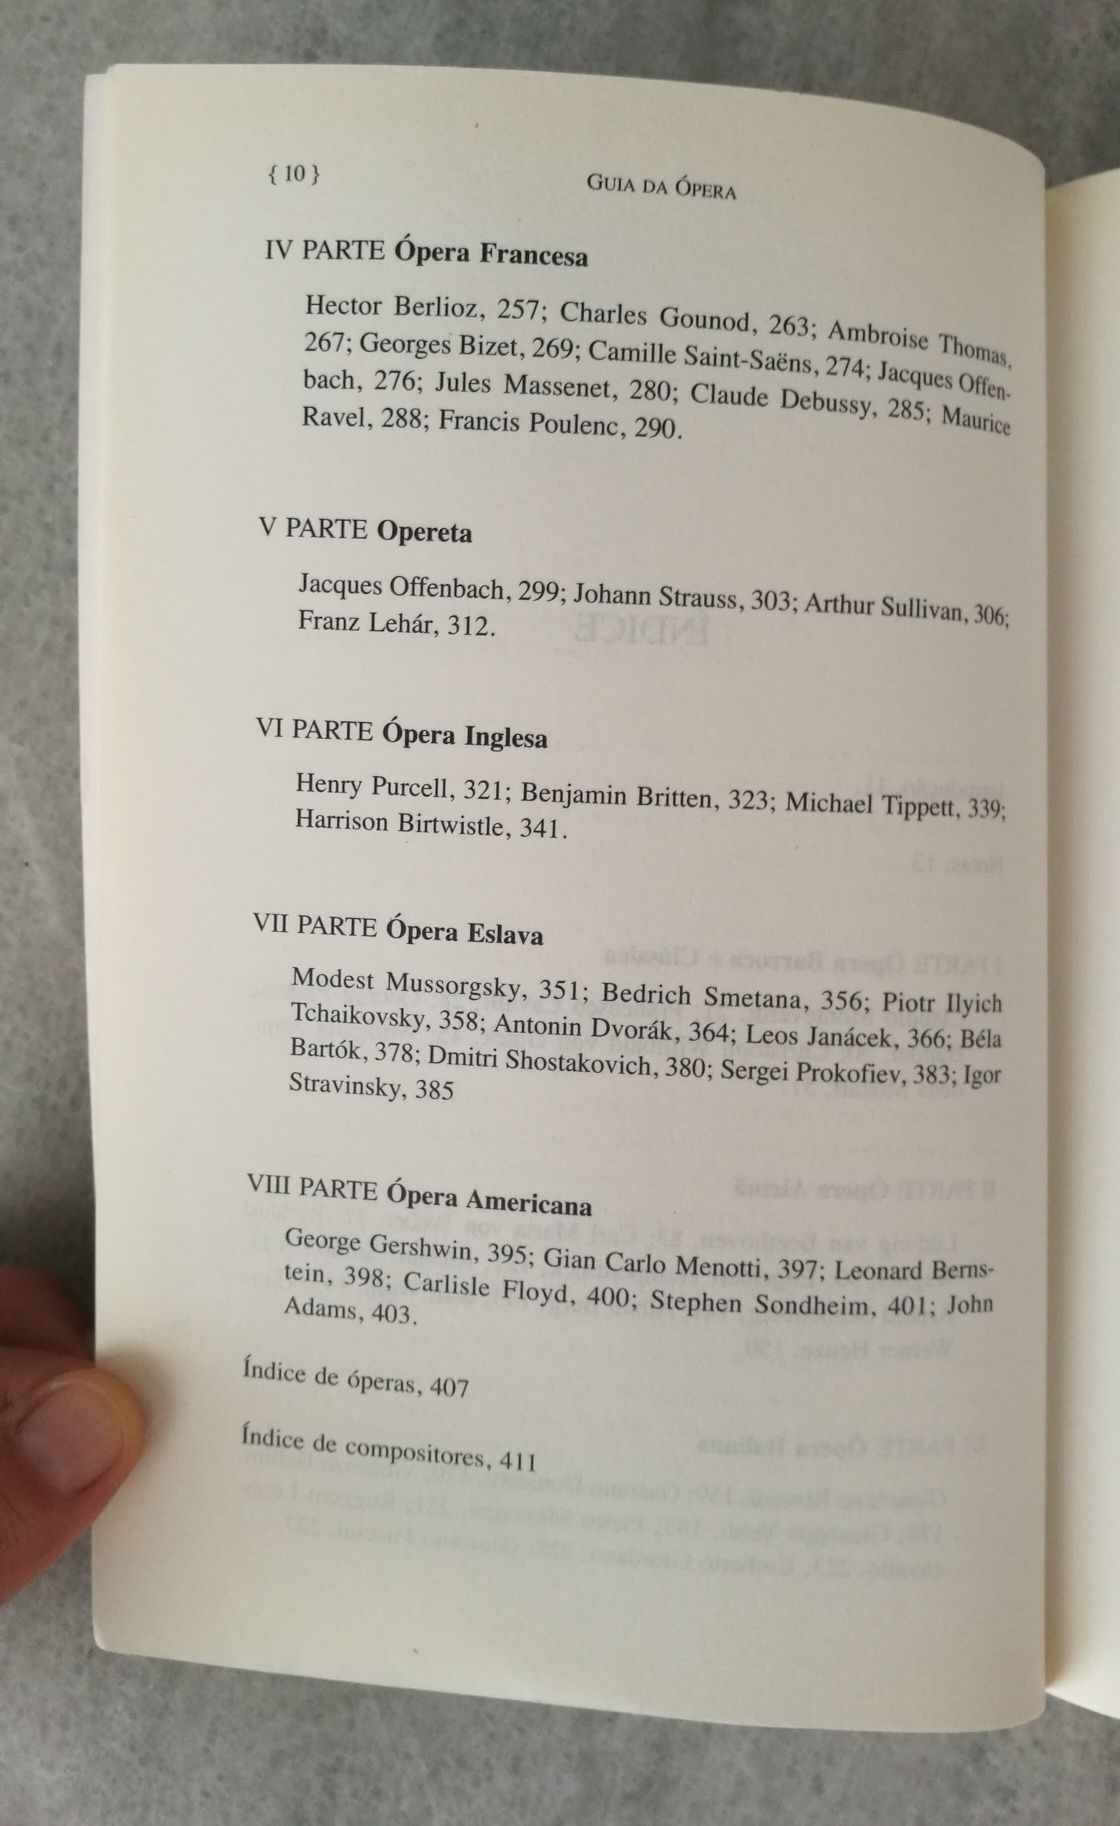 Livro "Guia da Ópera" de Rupert Christiansen